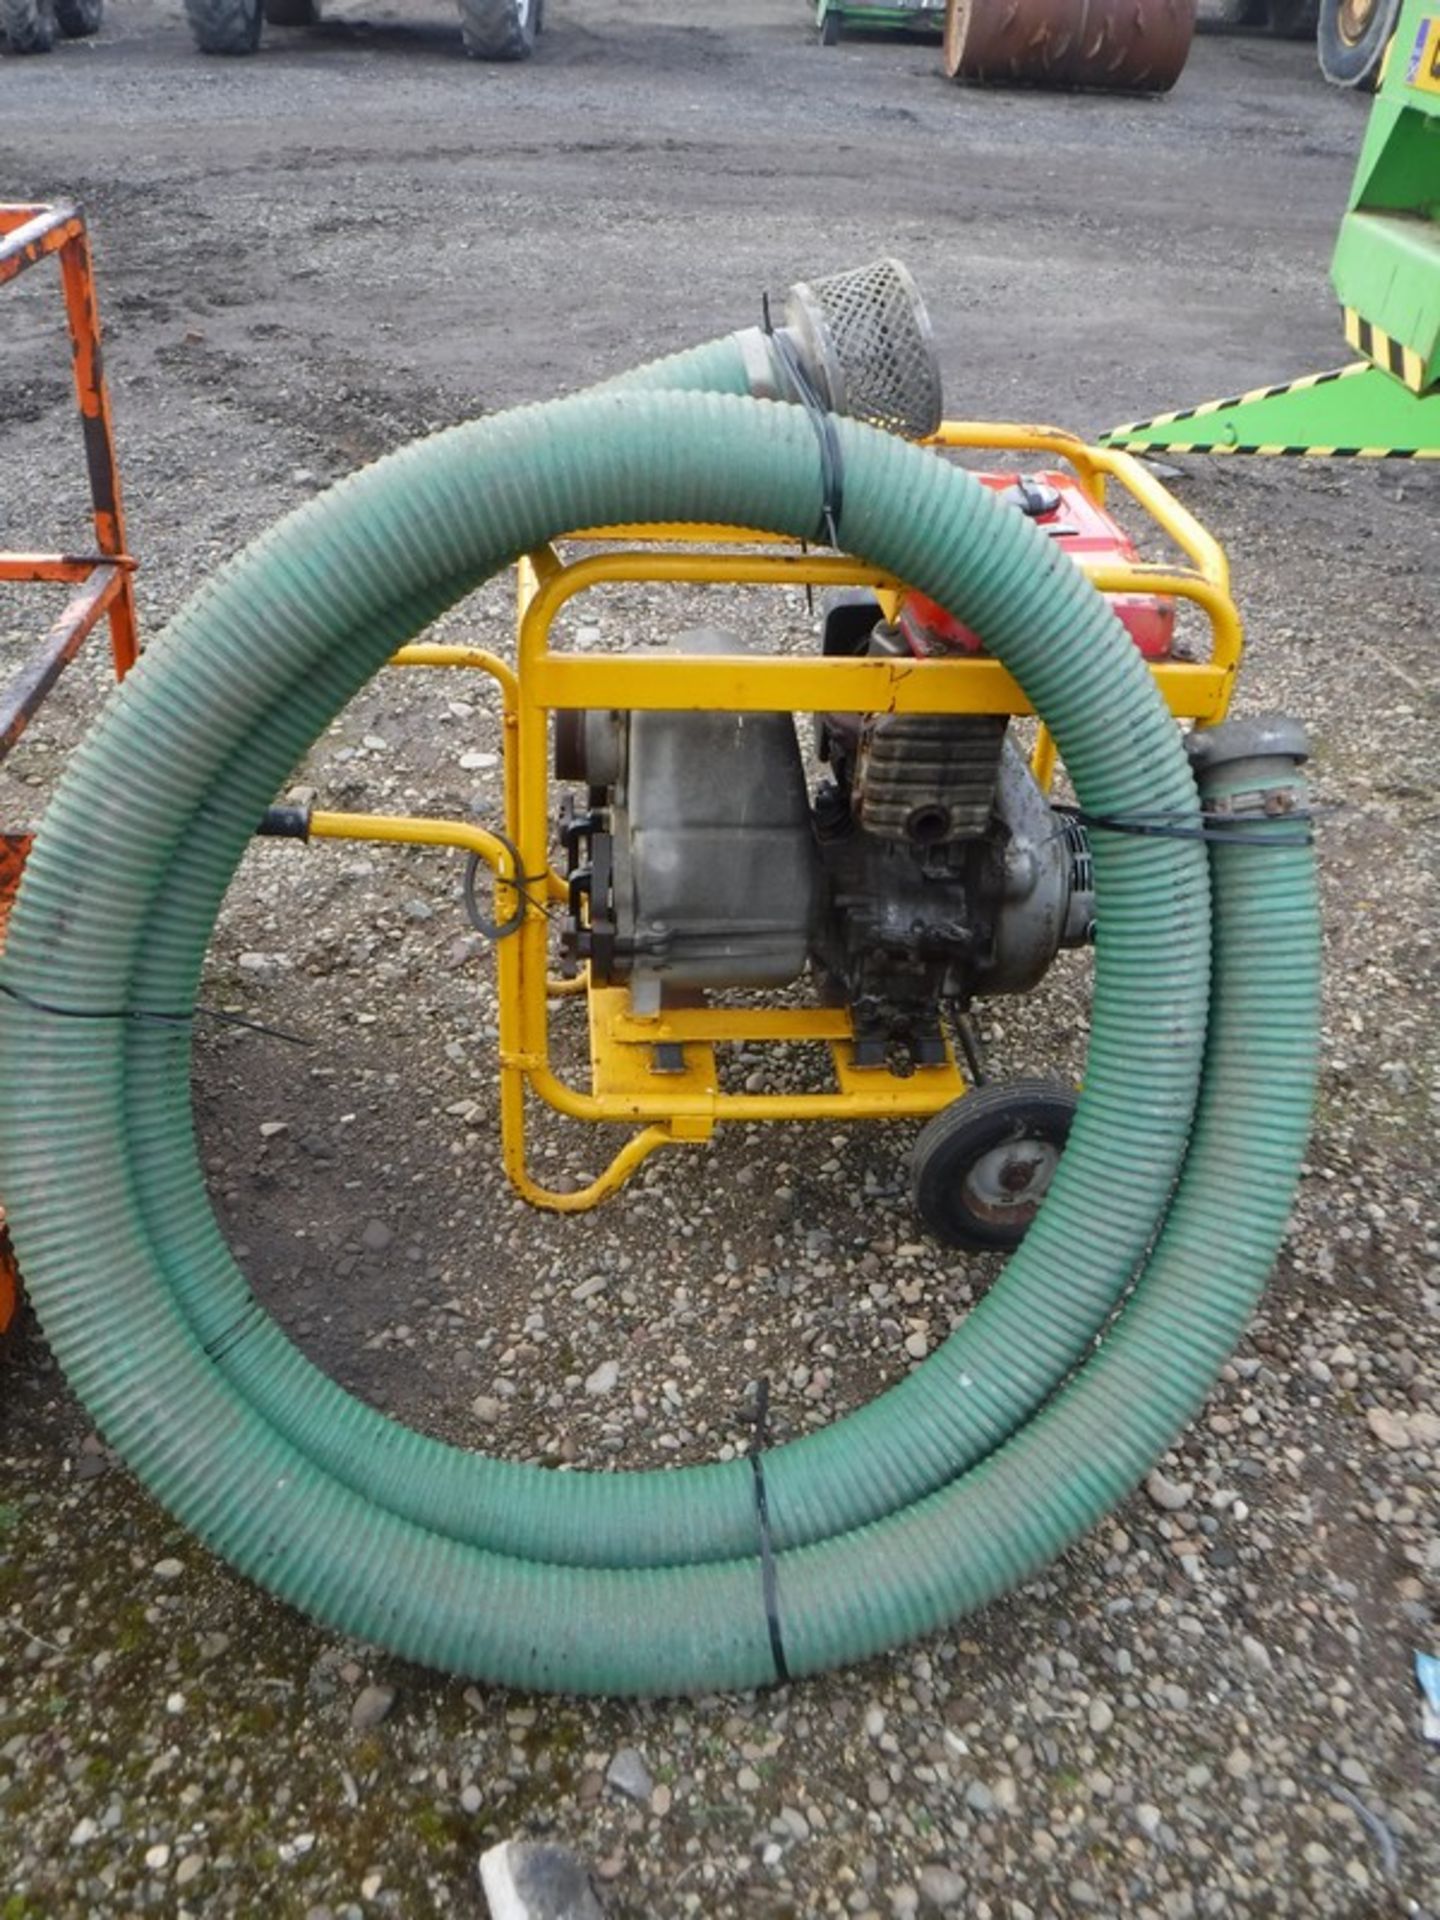 WATER PUMP 4" with diesel honda engine. C/W intake hose - Image 2 of 4